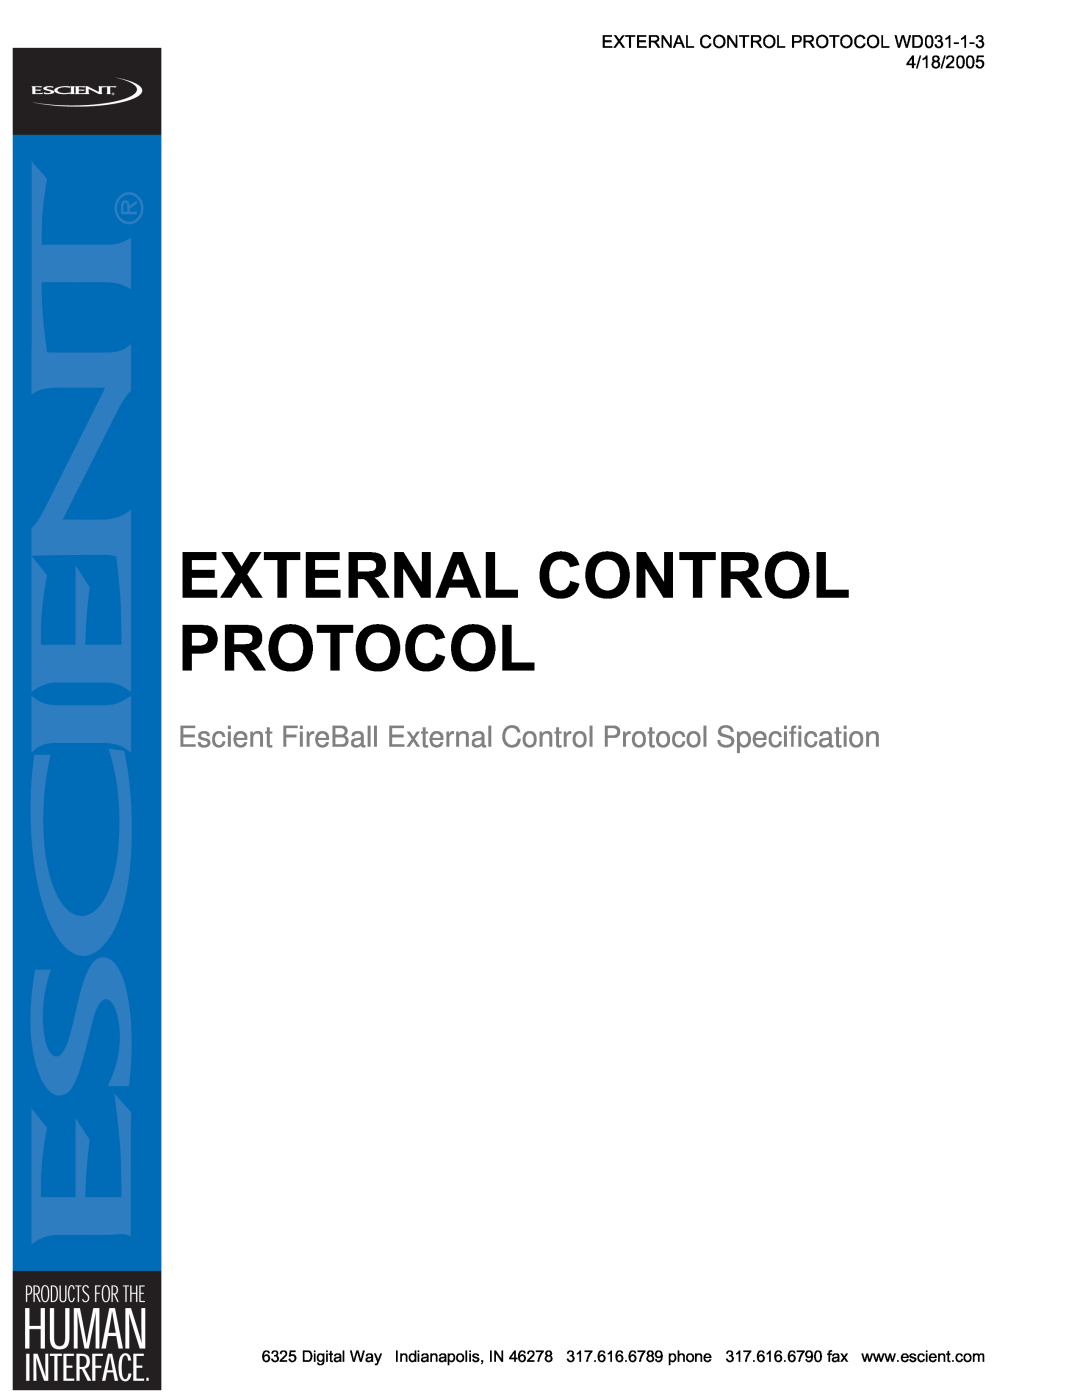 Escient MP-150 manual External Control Protocol, EXTERNAL CONTROL PROTOCOL WD031-1-34/18/2005 